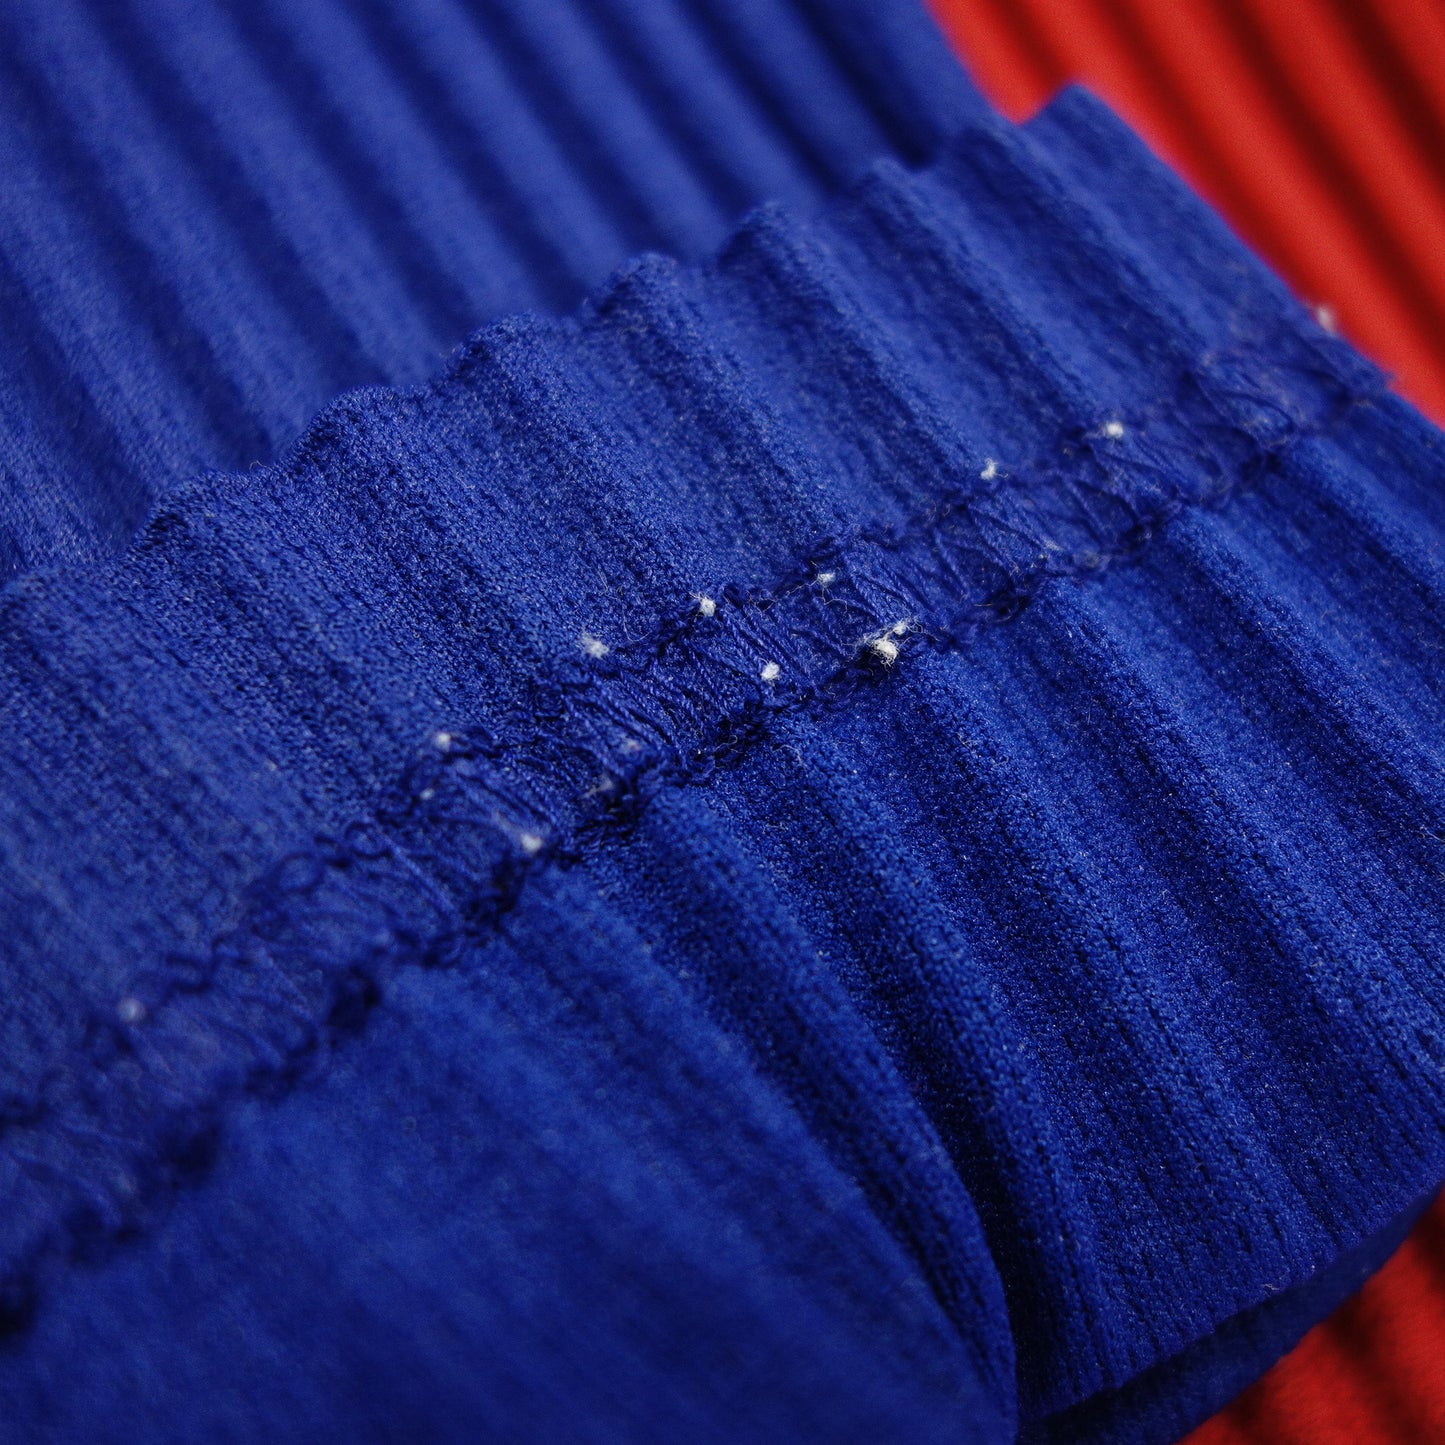 品相良好◆Issey Miyake HOMME PLISSE 长袖 T 恤剪裁和缝制褶皱 HP93JK201 双色男式红 x 蓝色 ISSEY MIYAKE HOMME PLISSE [AFB29] 